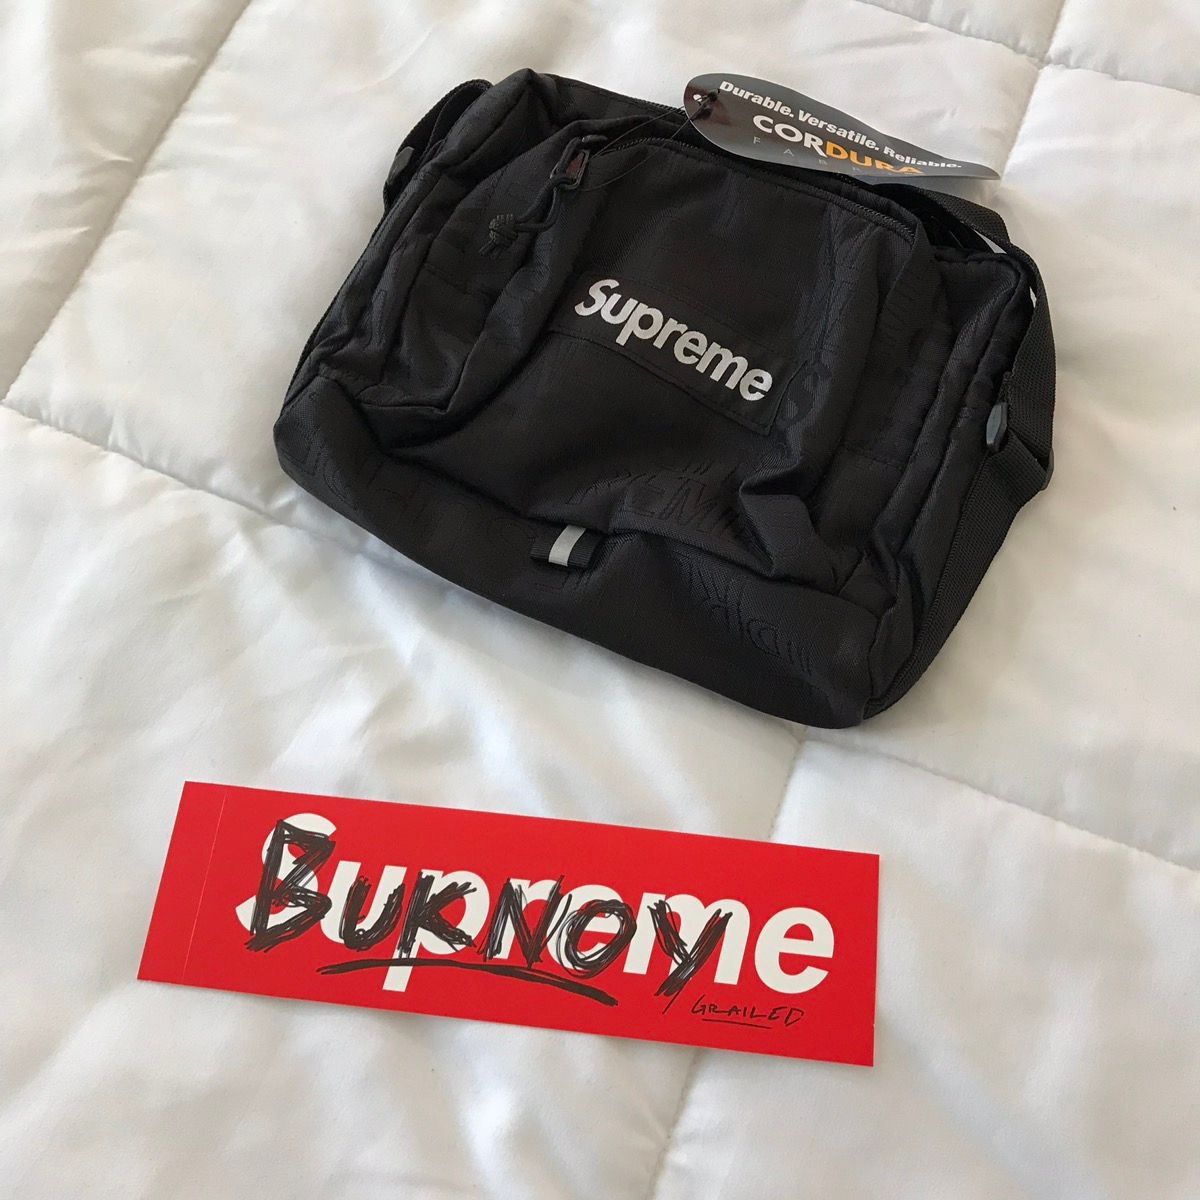 Supreme Supreme Shoulder Bag SS19